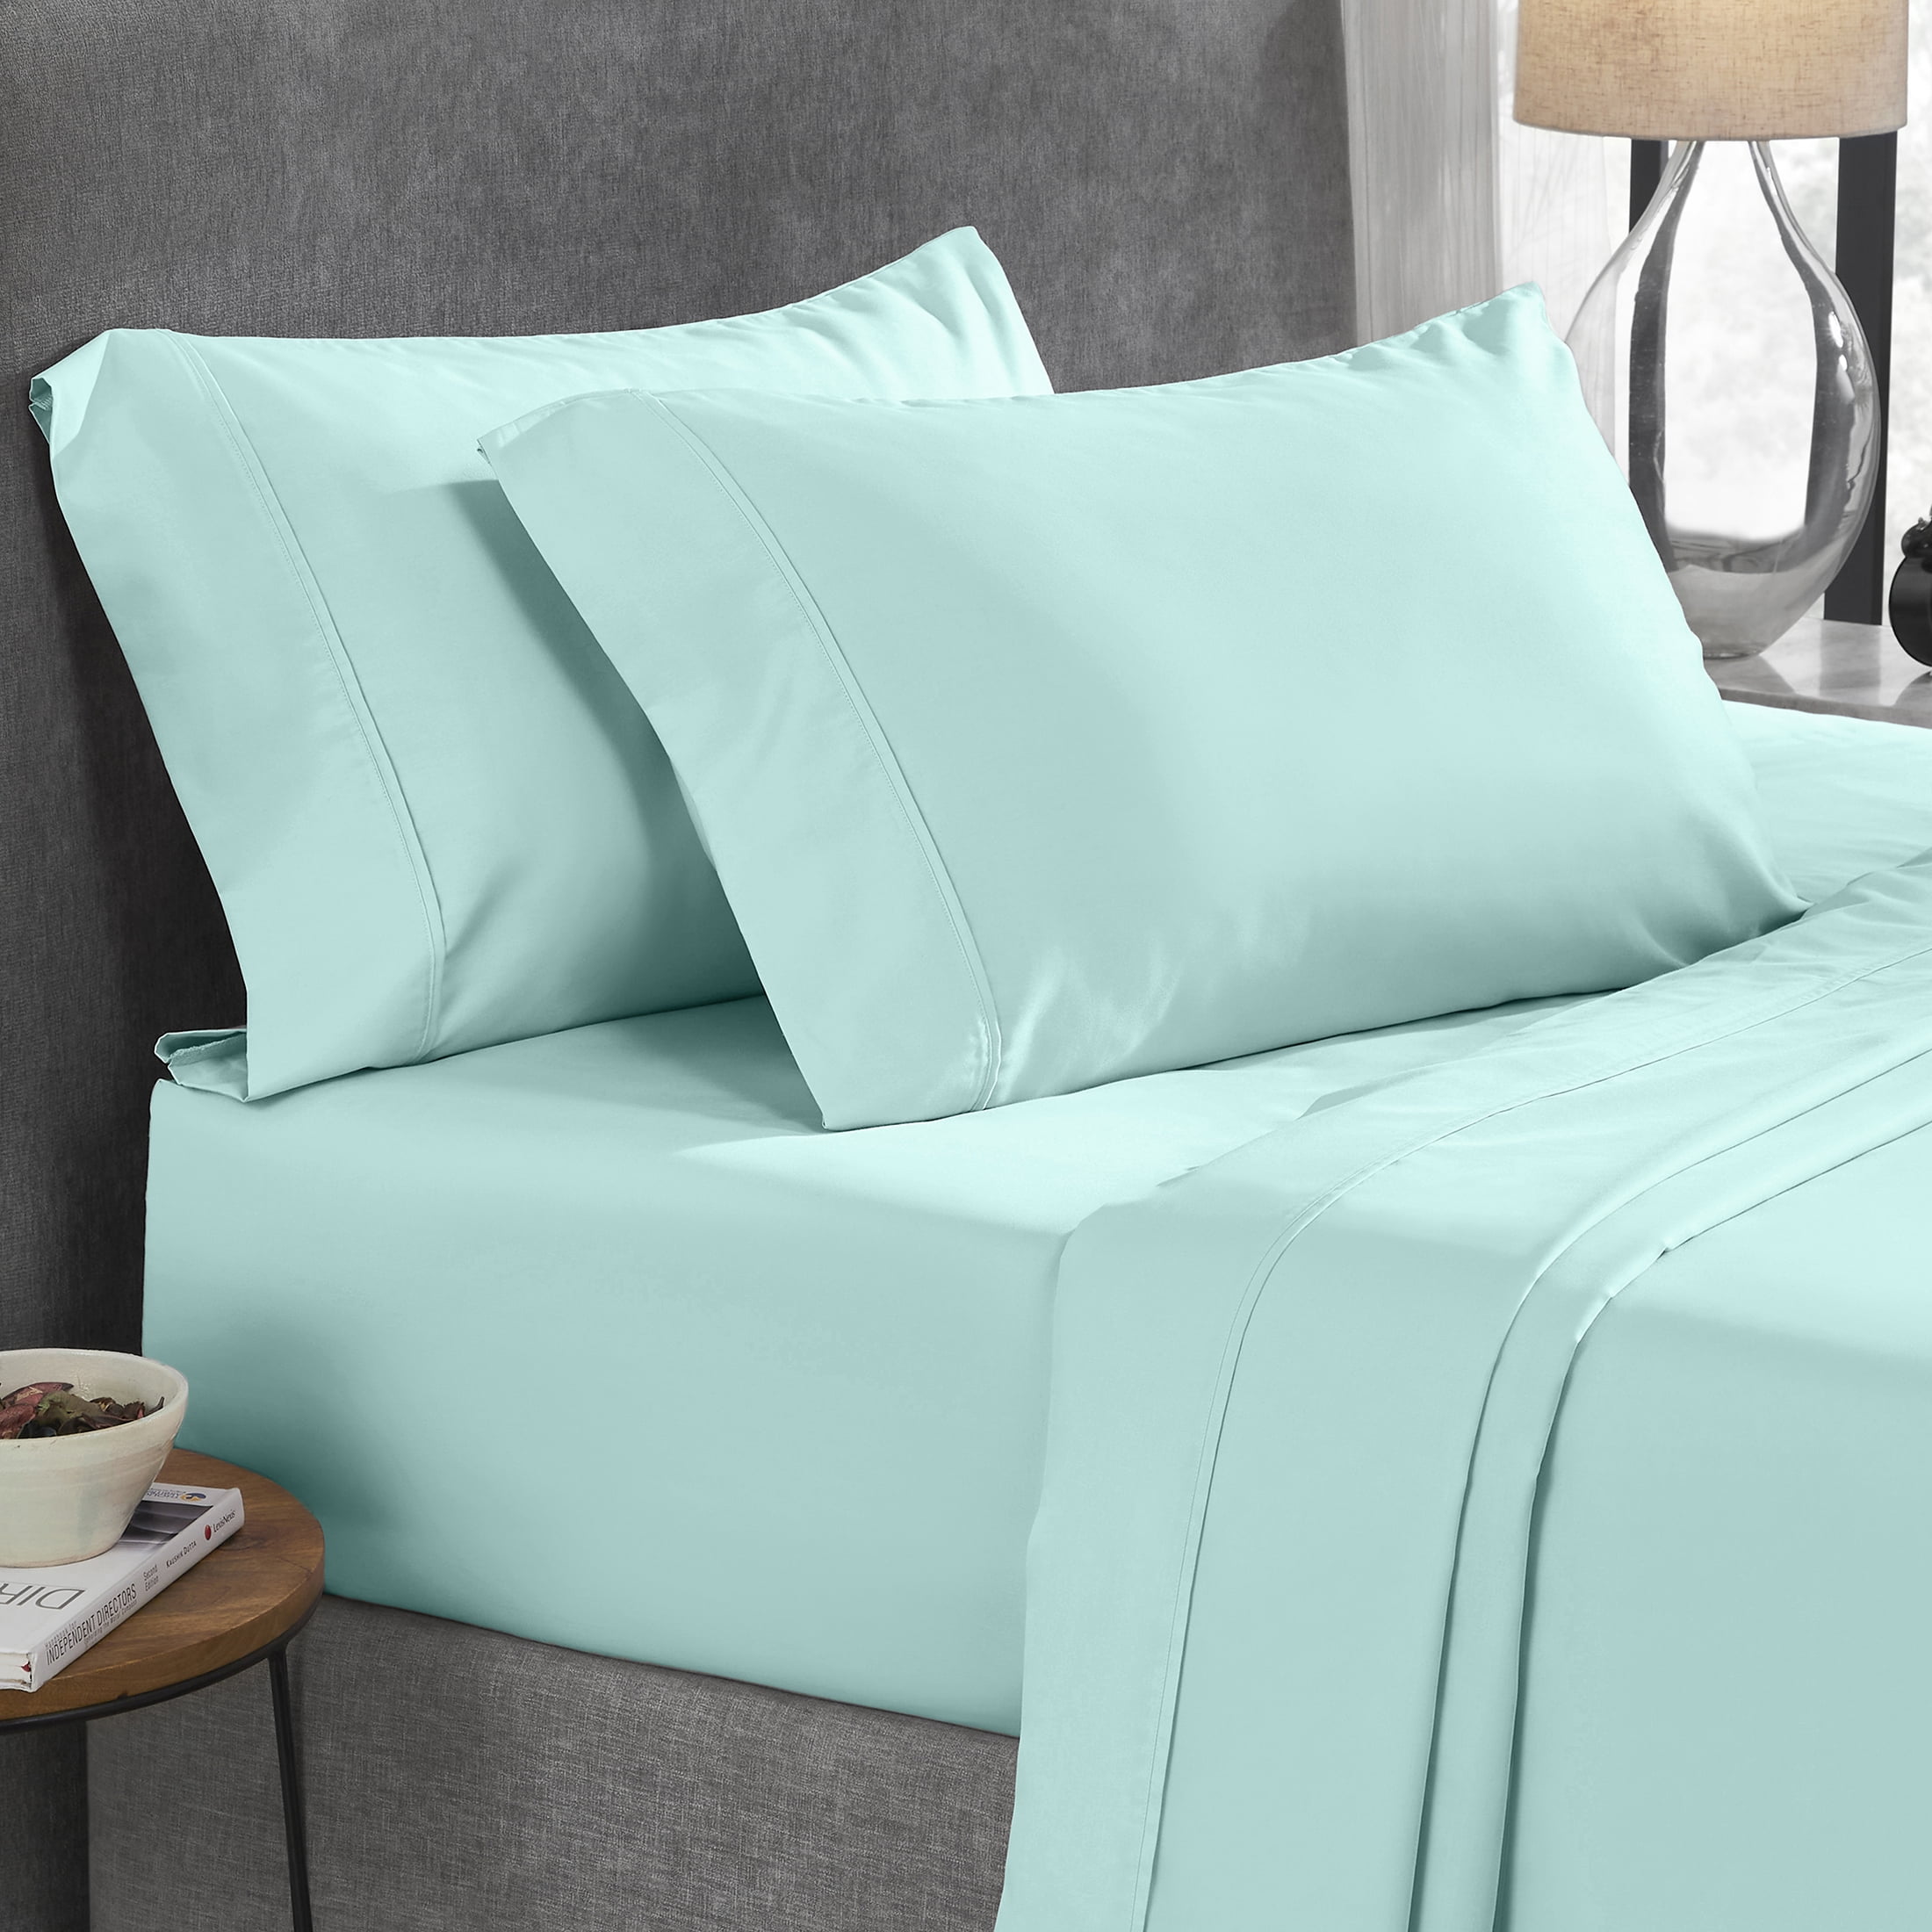 Details about   Premium Bedsheet Set Queen Size 3 Piece 800 TC 100% Cotton 